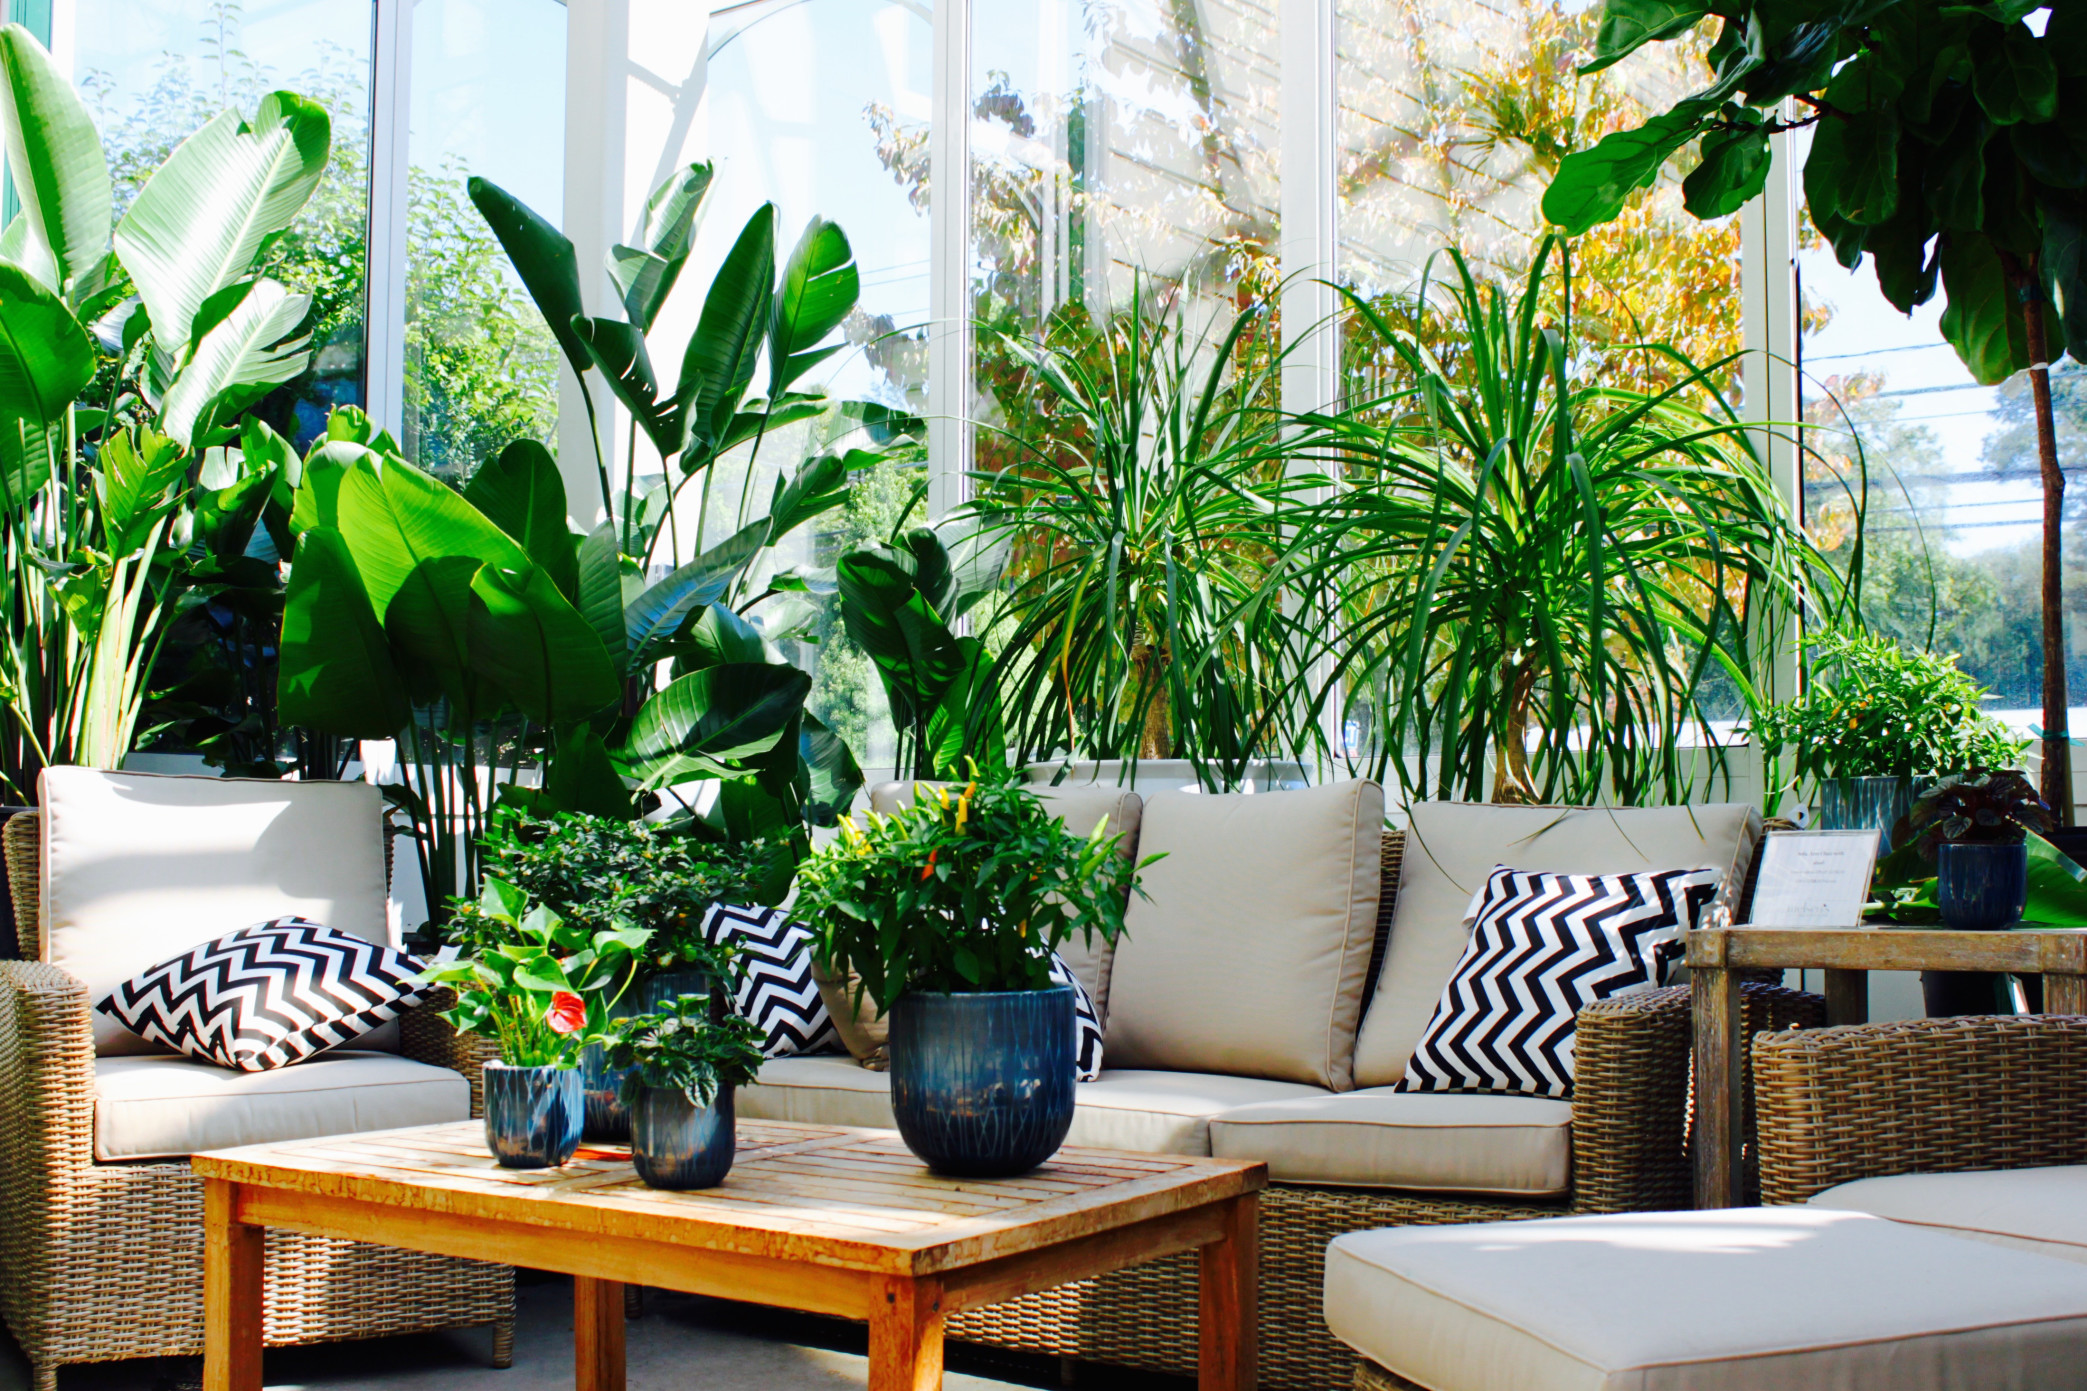 Zur luxuriösen Einrichtung des Wohnzimmers zählt auch die grüne Pracht von Pflanzen. Foto elodycy via Twenty20